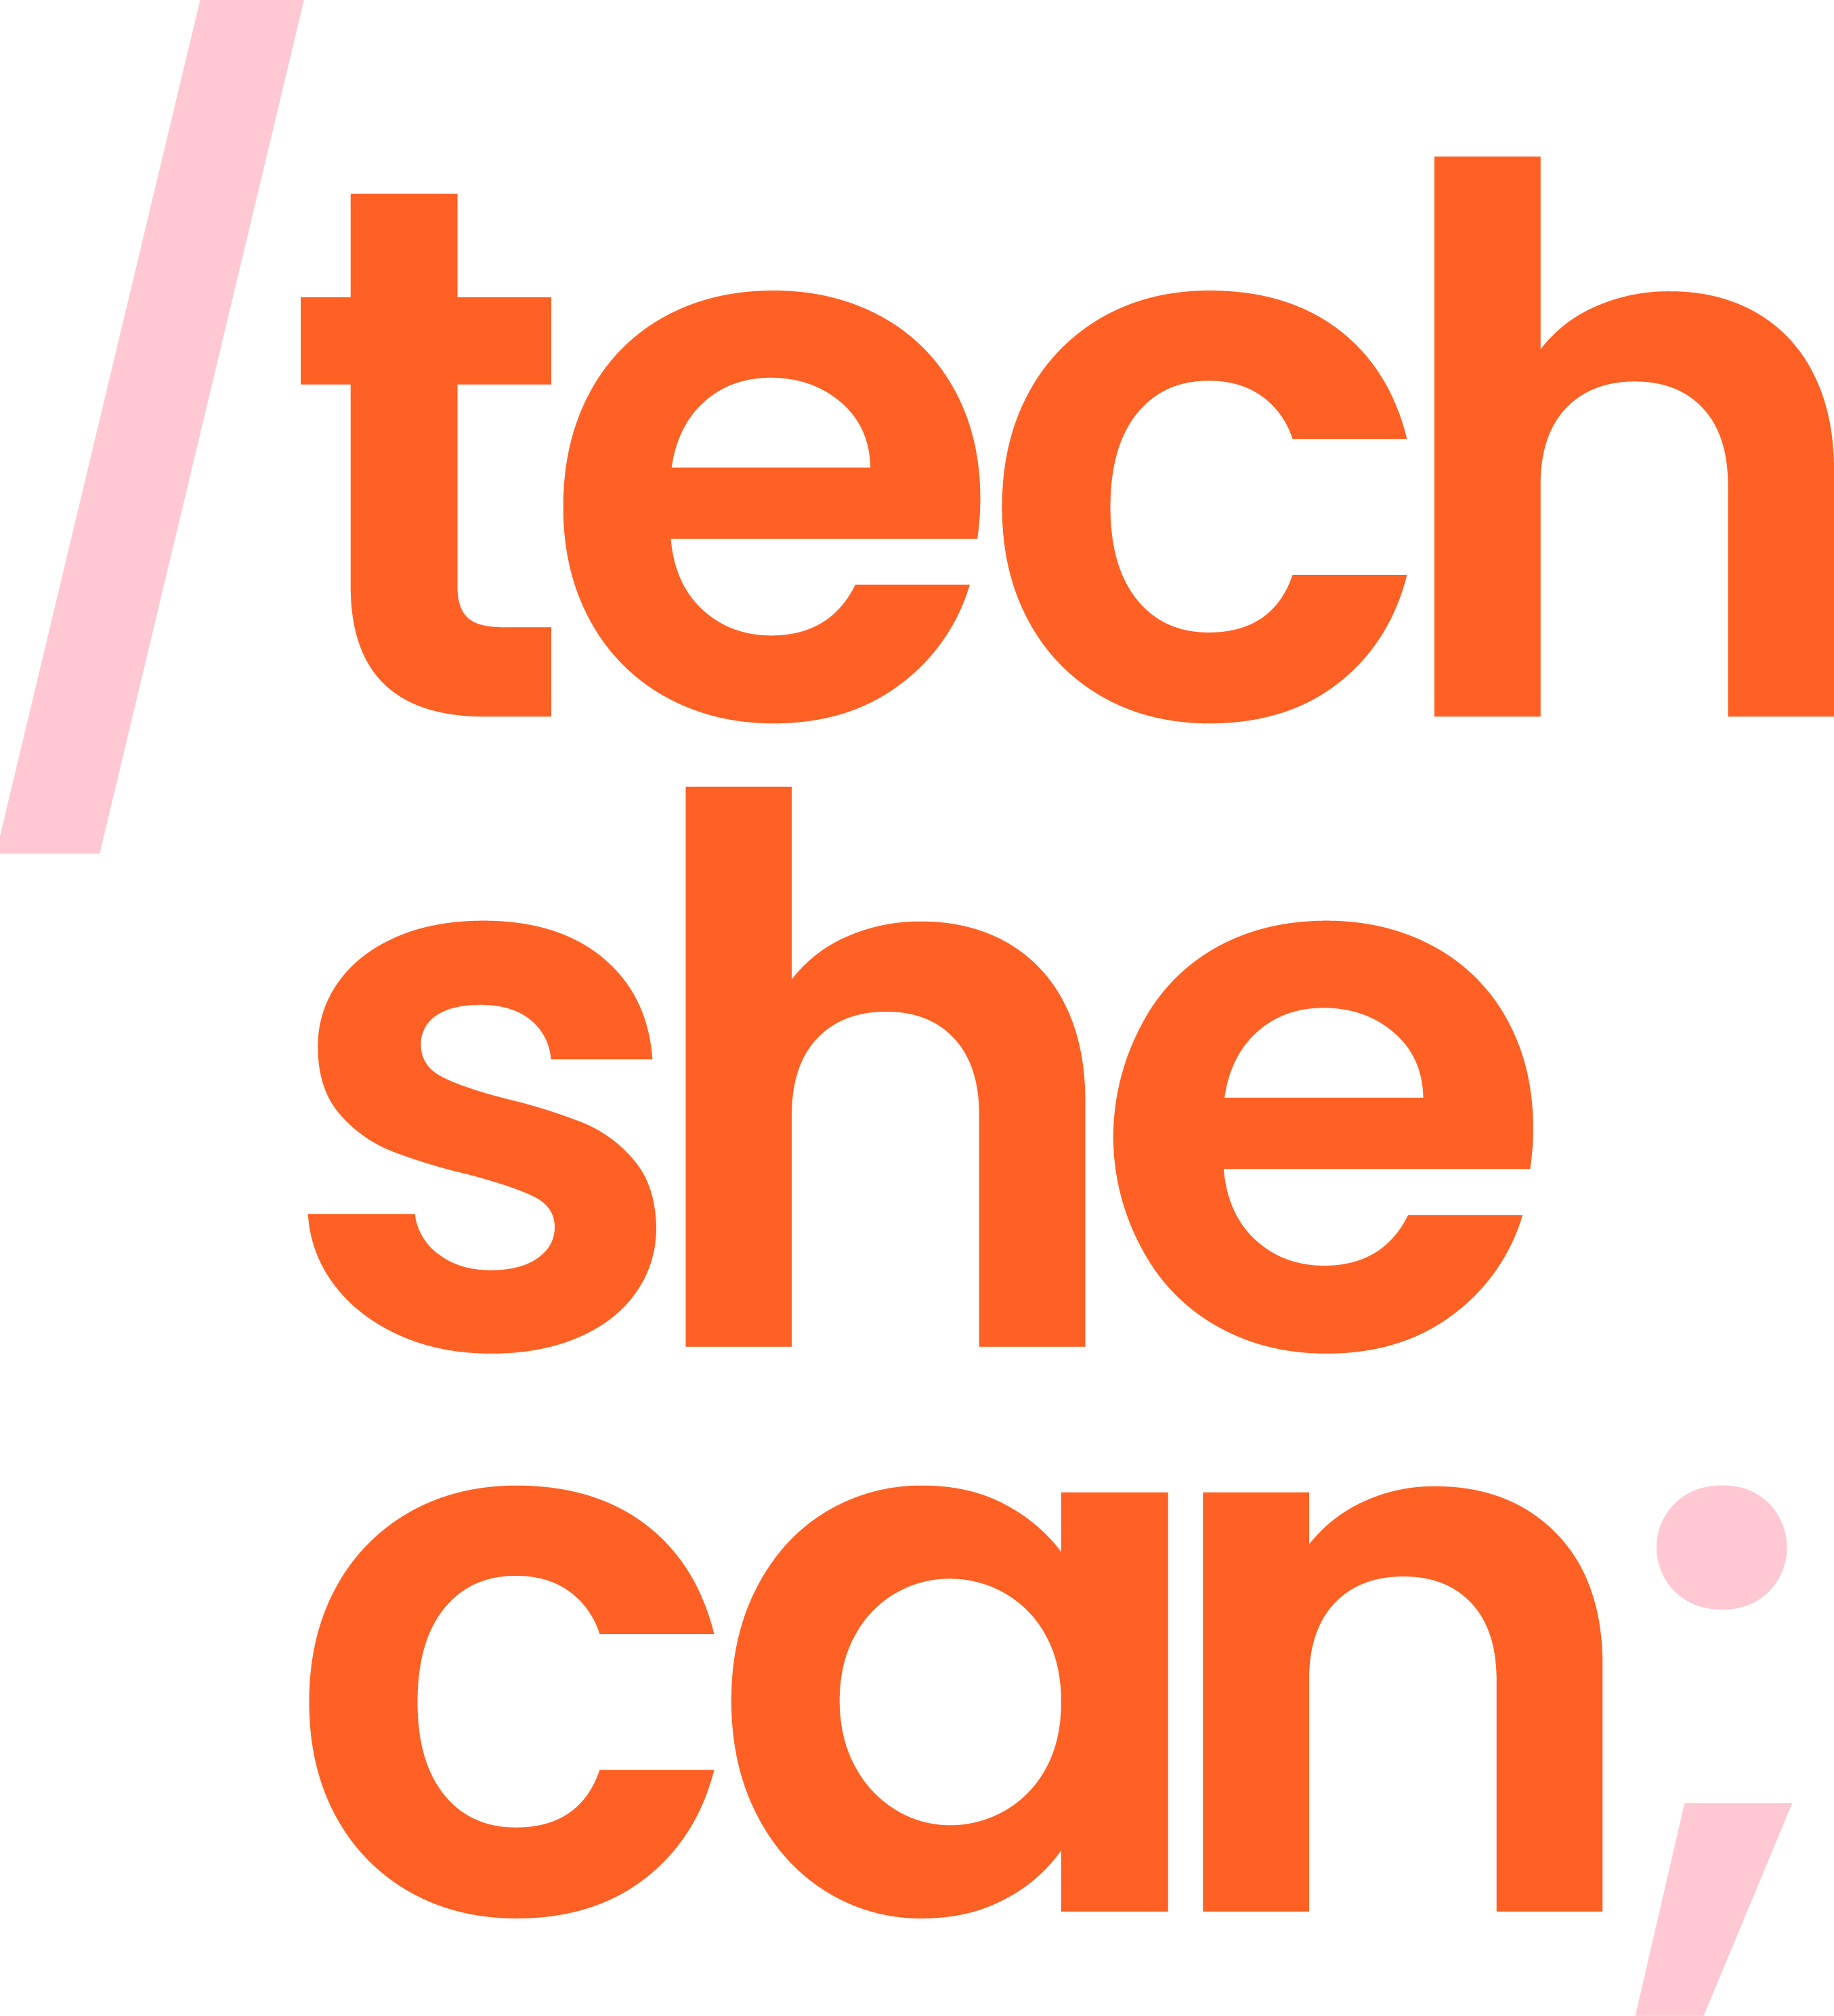 Tech She Can